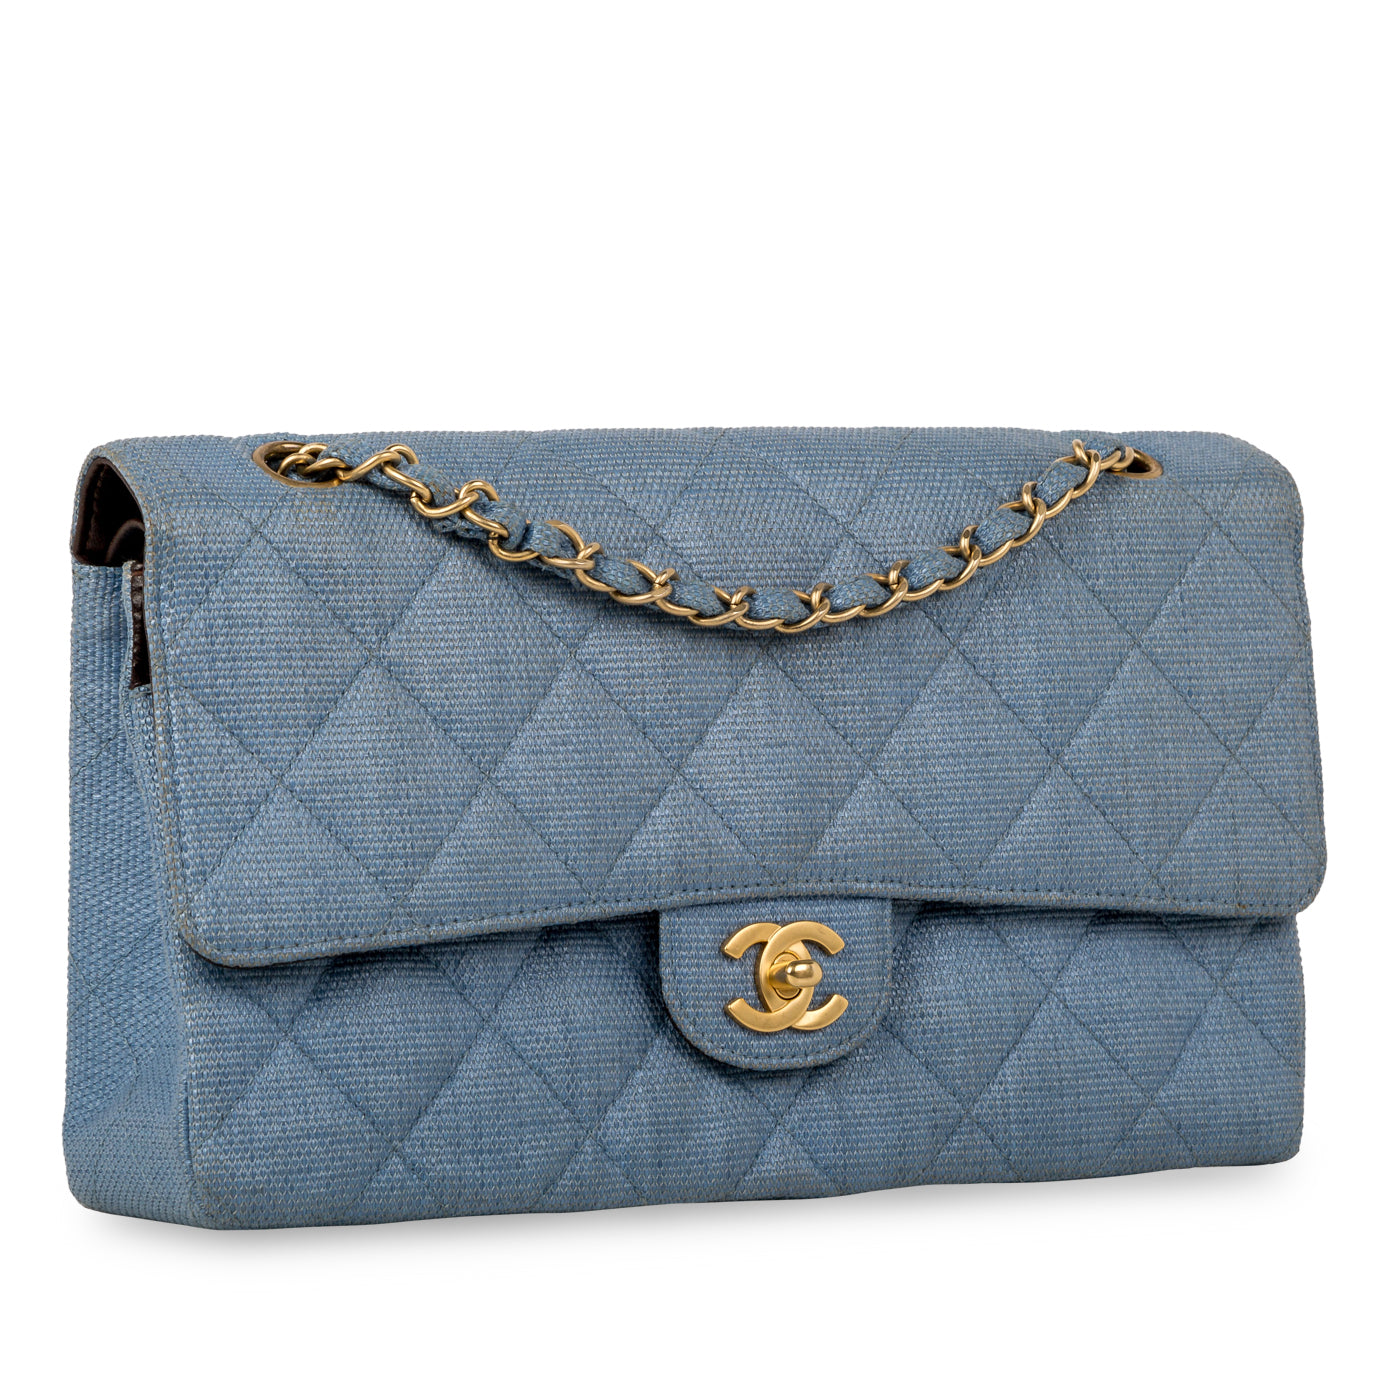 Chanel - Classic Flap Bag - Denim Effect Raffia - Medium Size